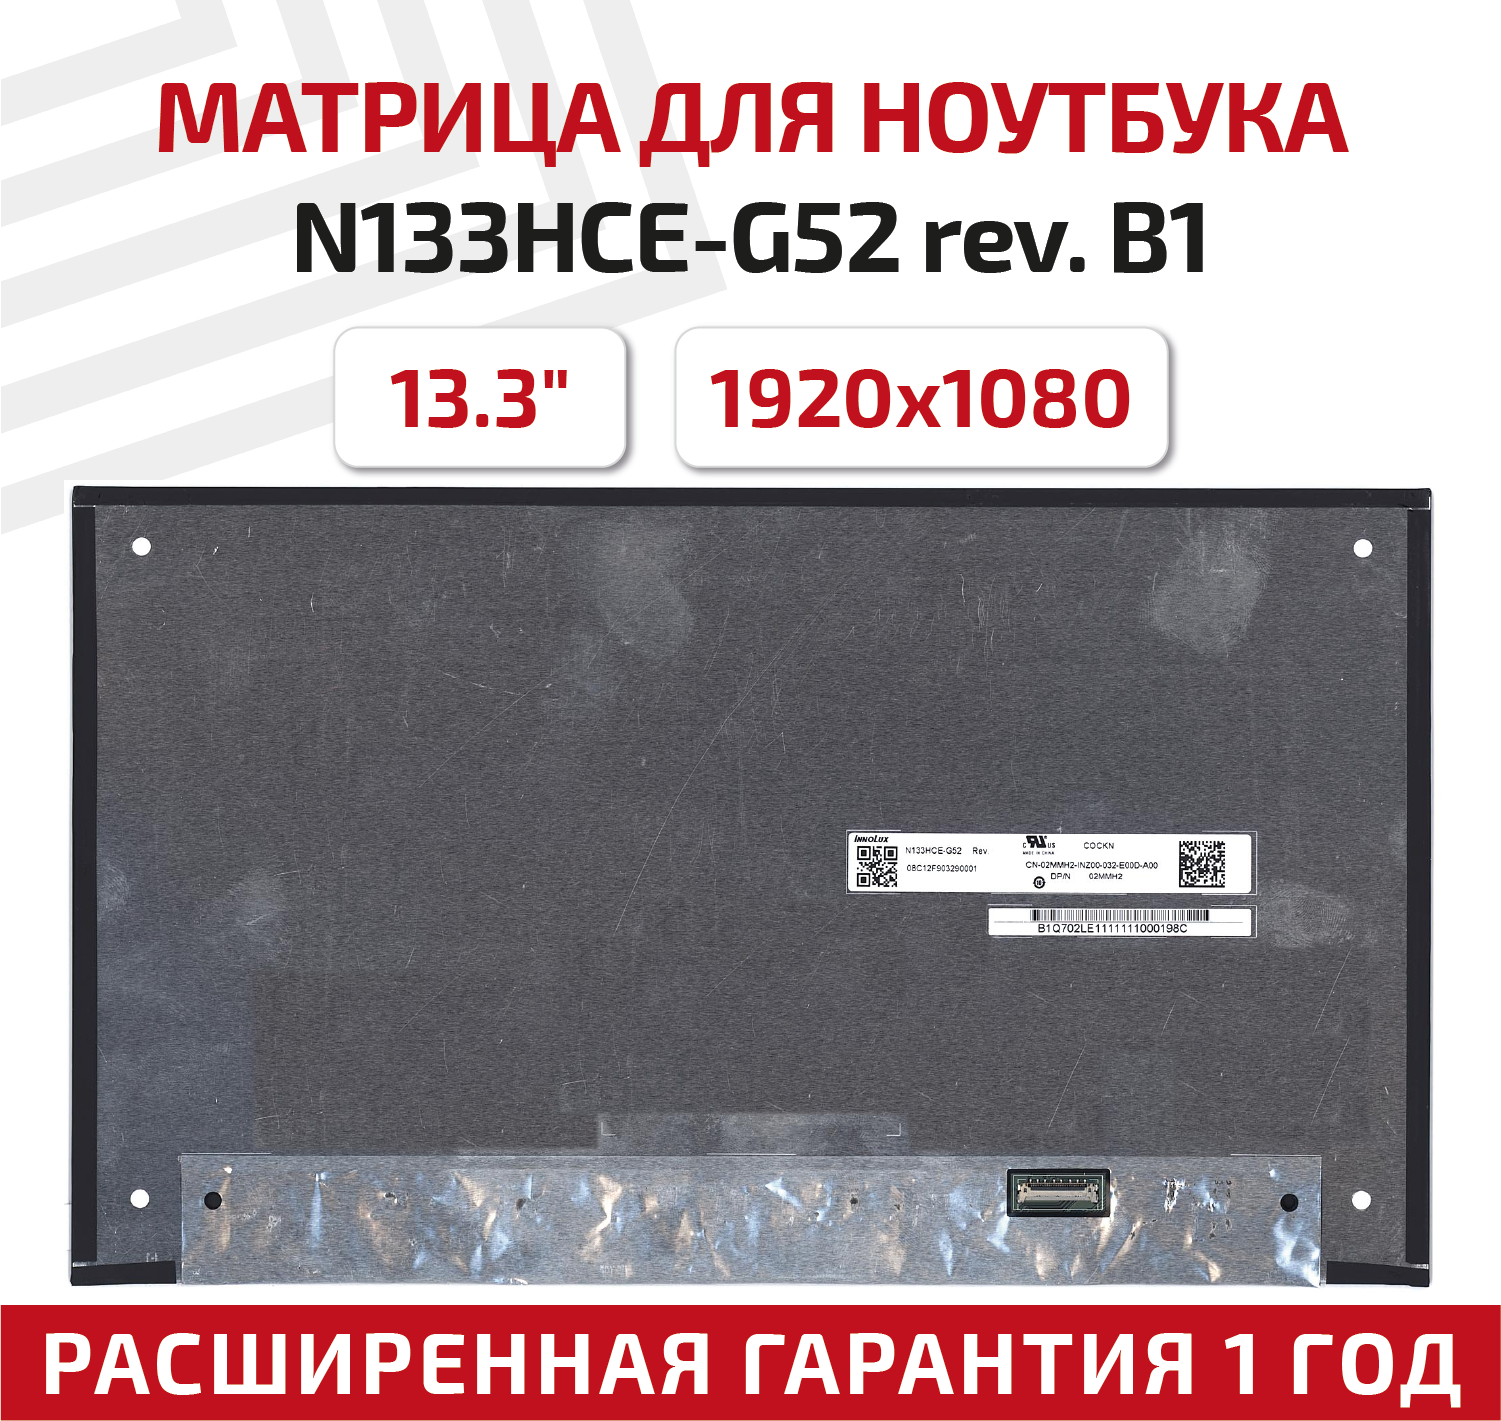 Матрица (экран) для ноутбука N133HCE-G52 rev. B1 13.3" 1920x1080 30-pin UltraSlim светодиодная (LED) матовая